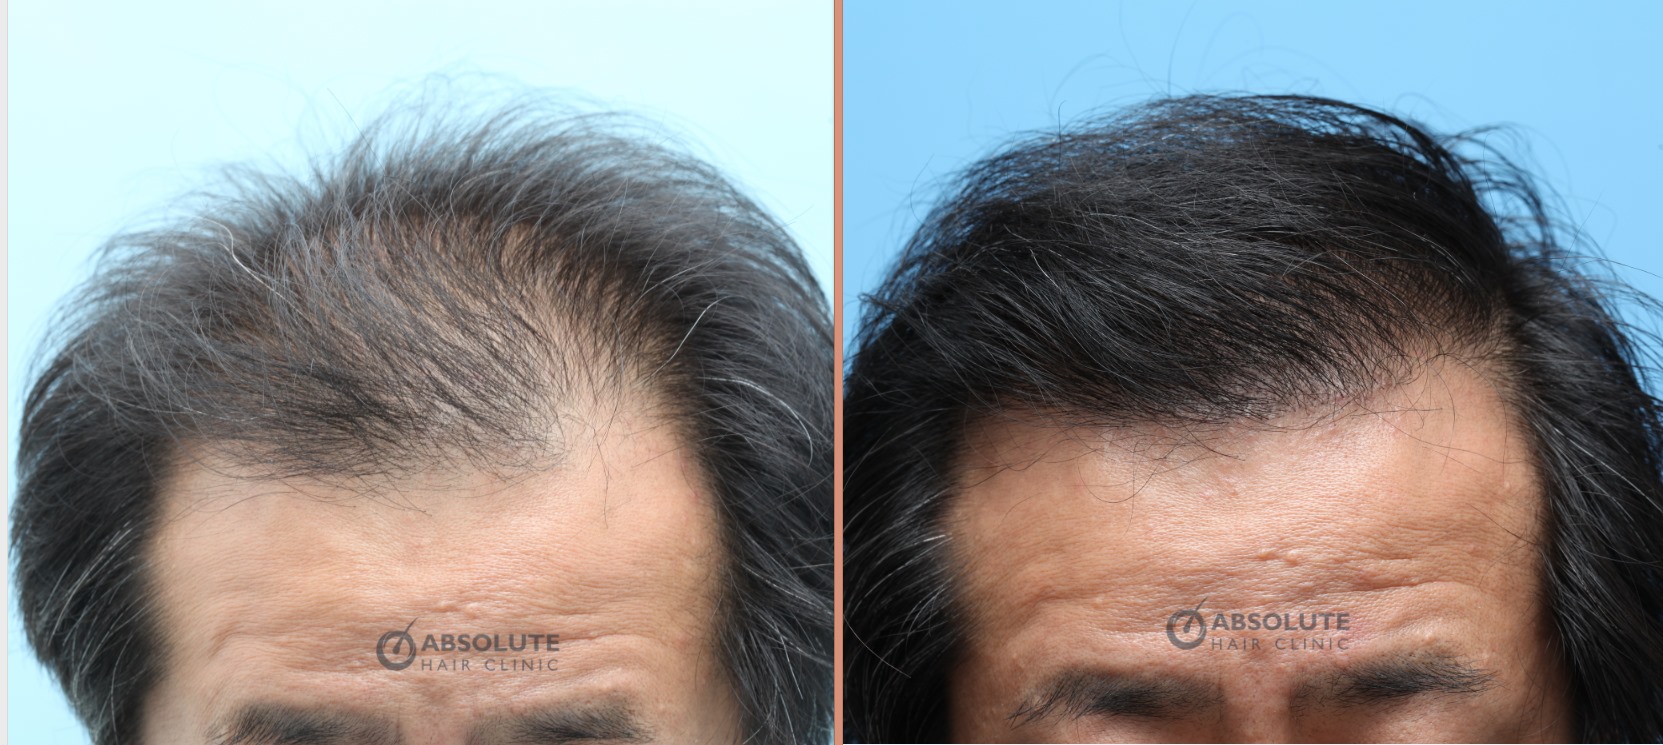 Cấy tóc FUE 3000 nang, kết quả sau 1 năm - case 71